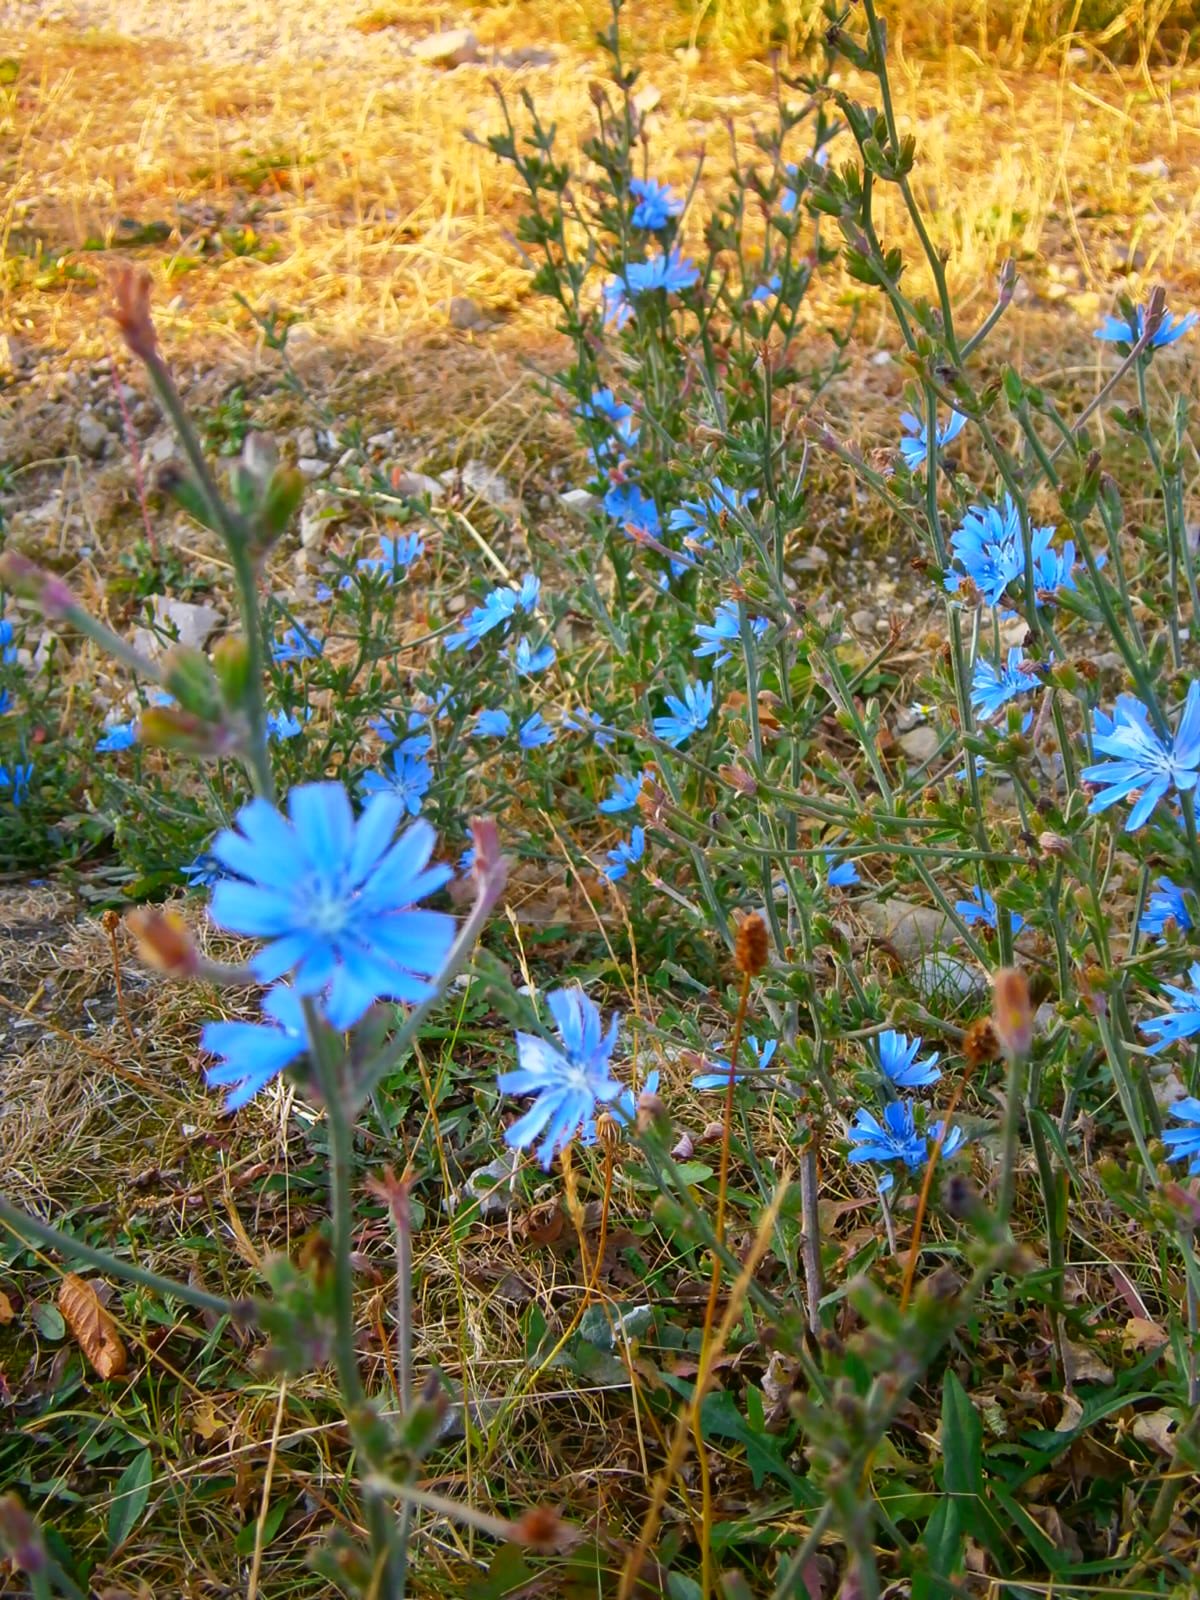 Deutsche Blumen am Wegesrand. Die Wegwarte hat das schönste Blau aller Blumen.